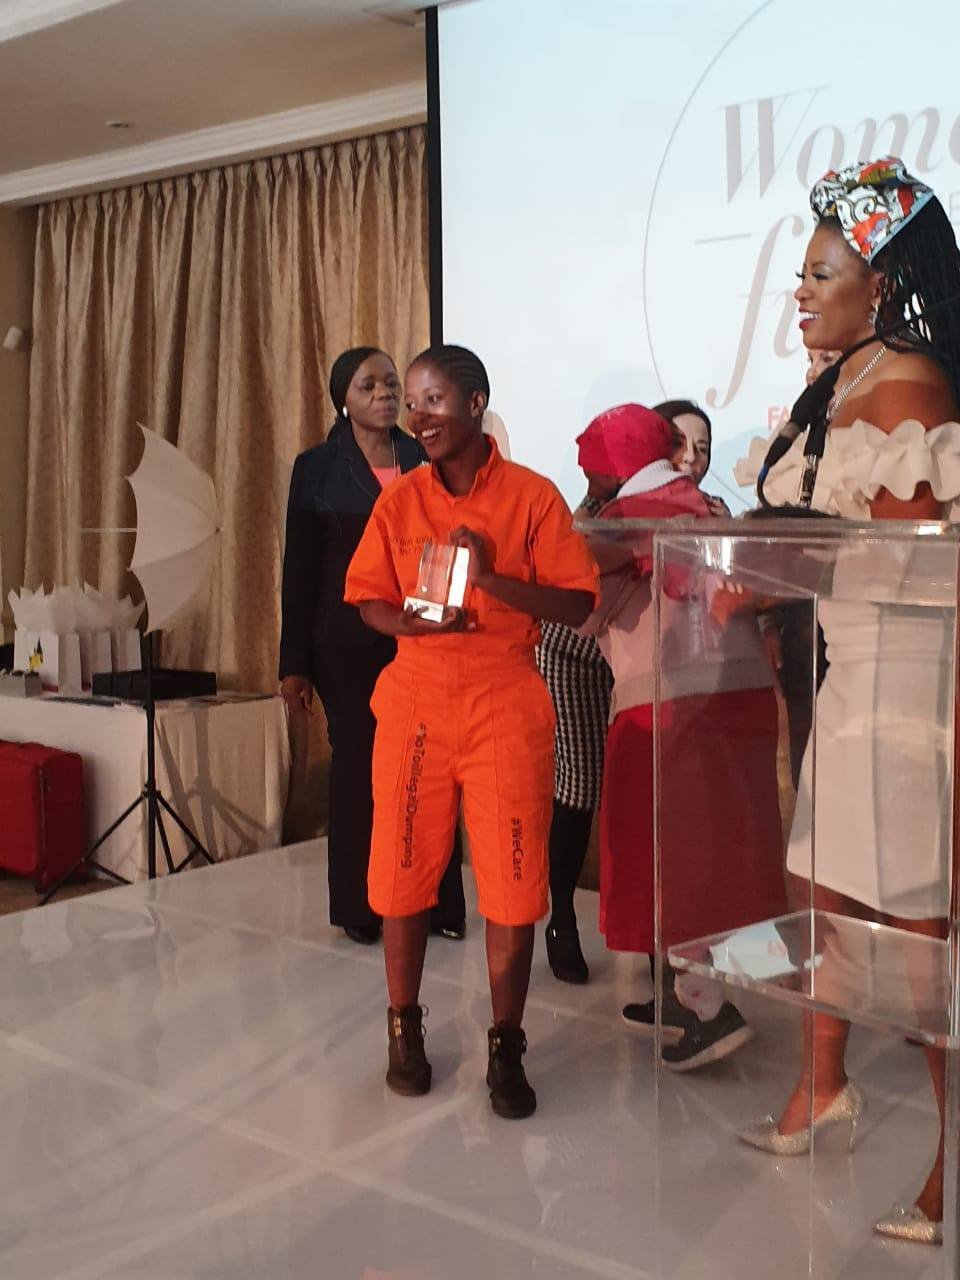 Nondumiso Sibiya scoops the Fair lady rising star award